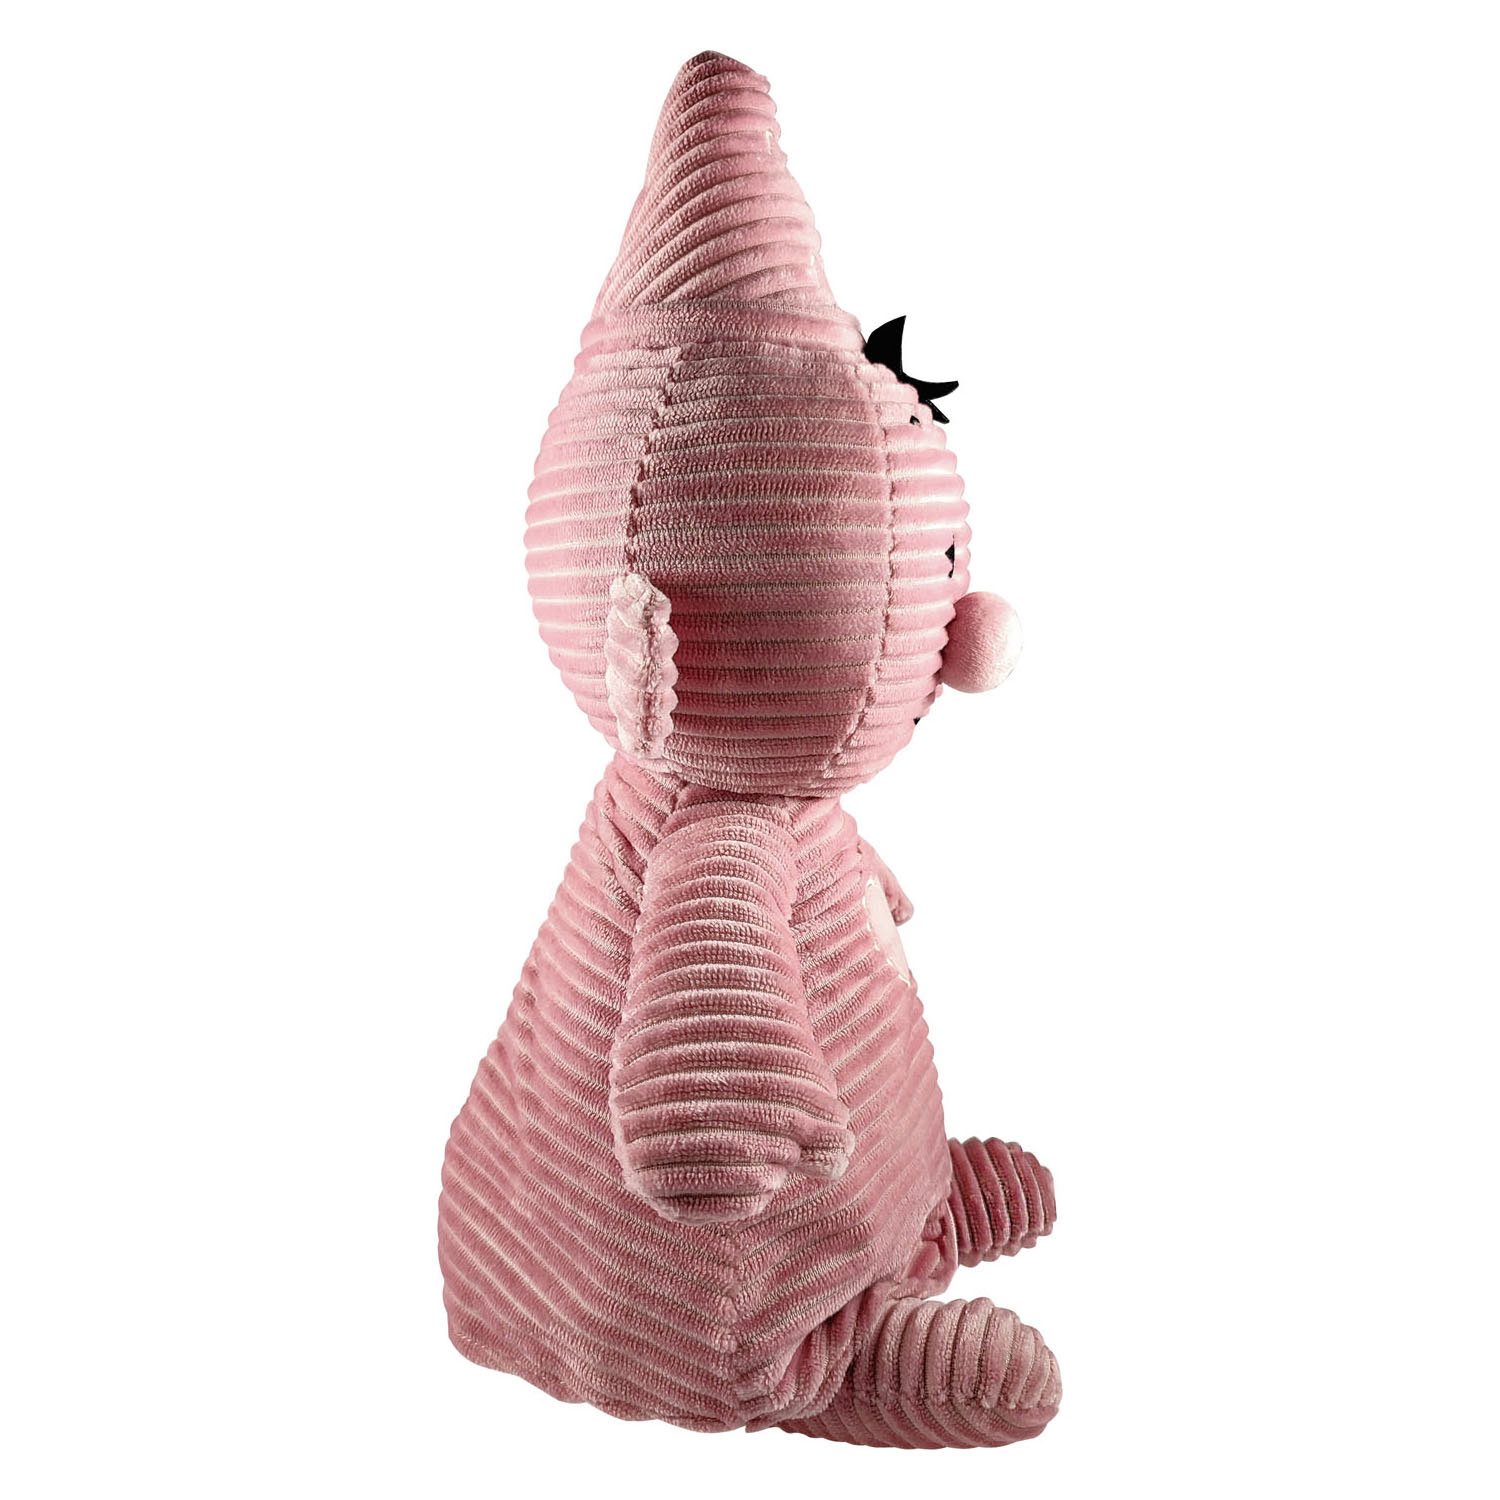 Bumba Plüschtier Corduroy Pink, 35 cm